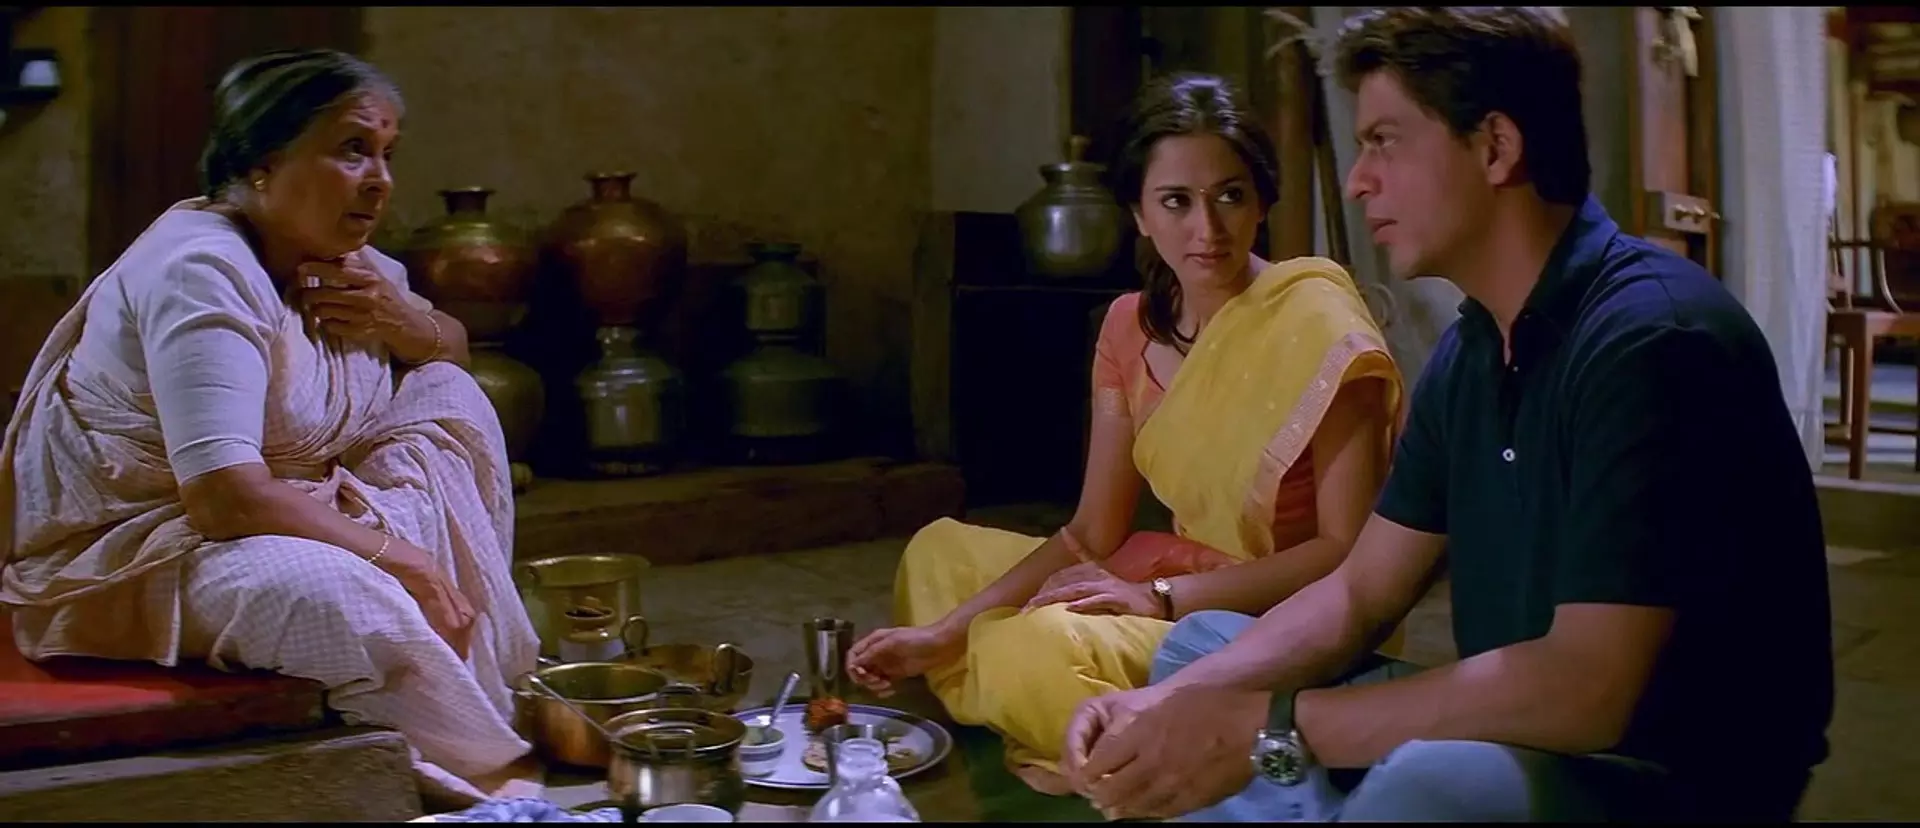 شاهرخ خان در فیلم سرزمین مادری نشسته روی زمین درحال خوردن غذا